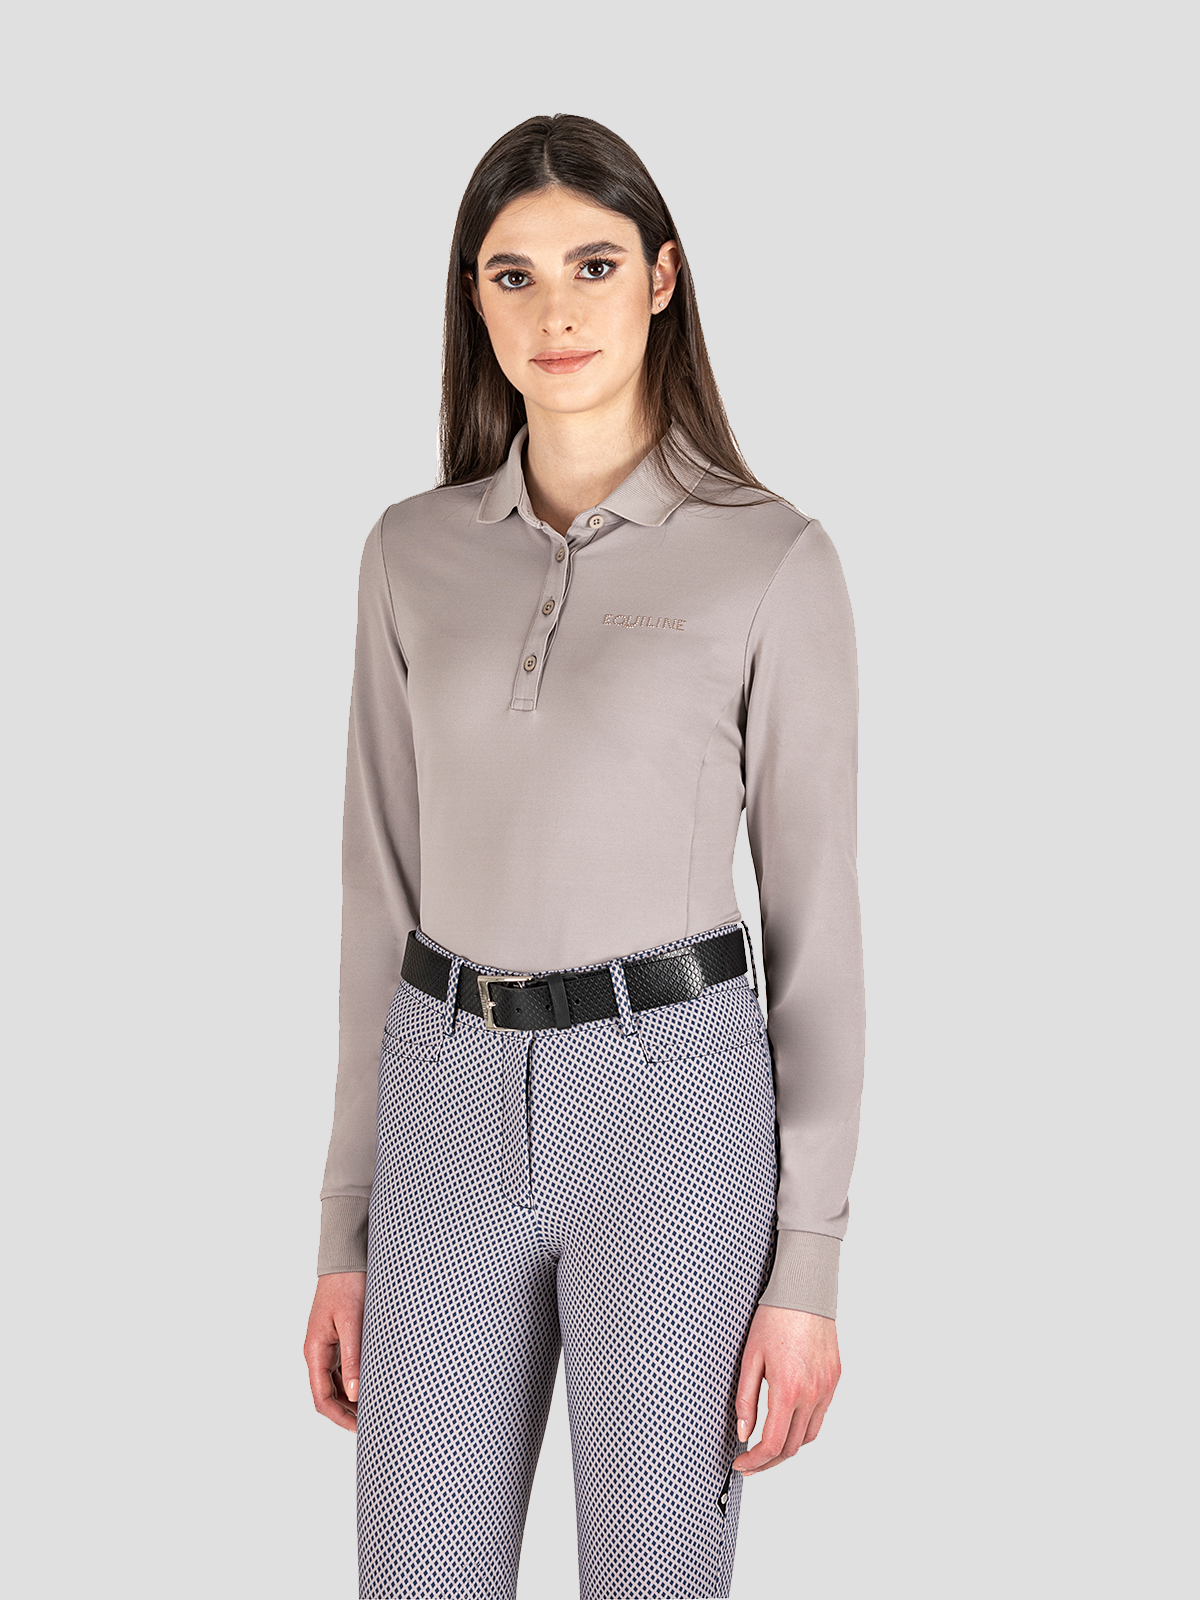 Evae Long Sleeve Women's Polo Shirt 1